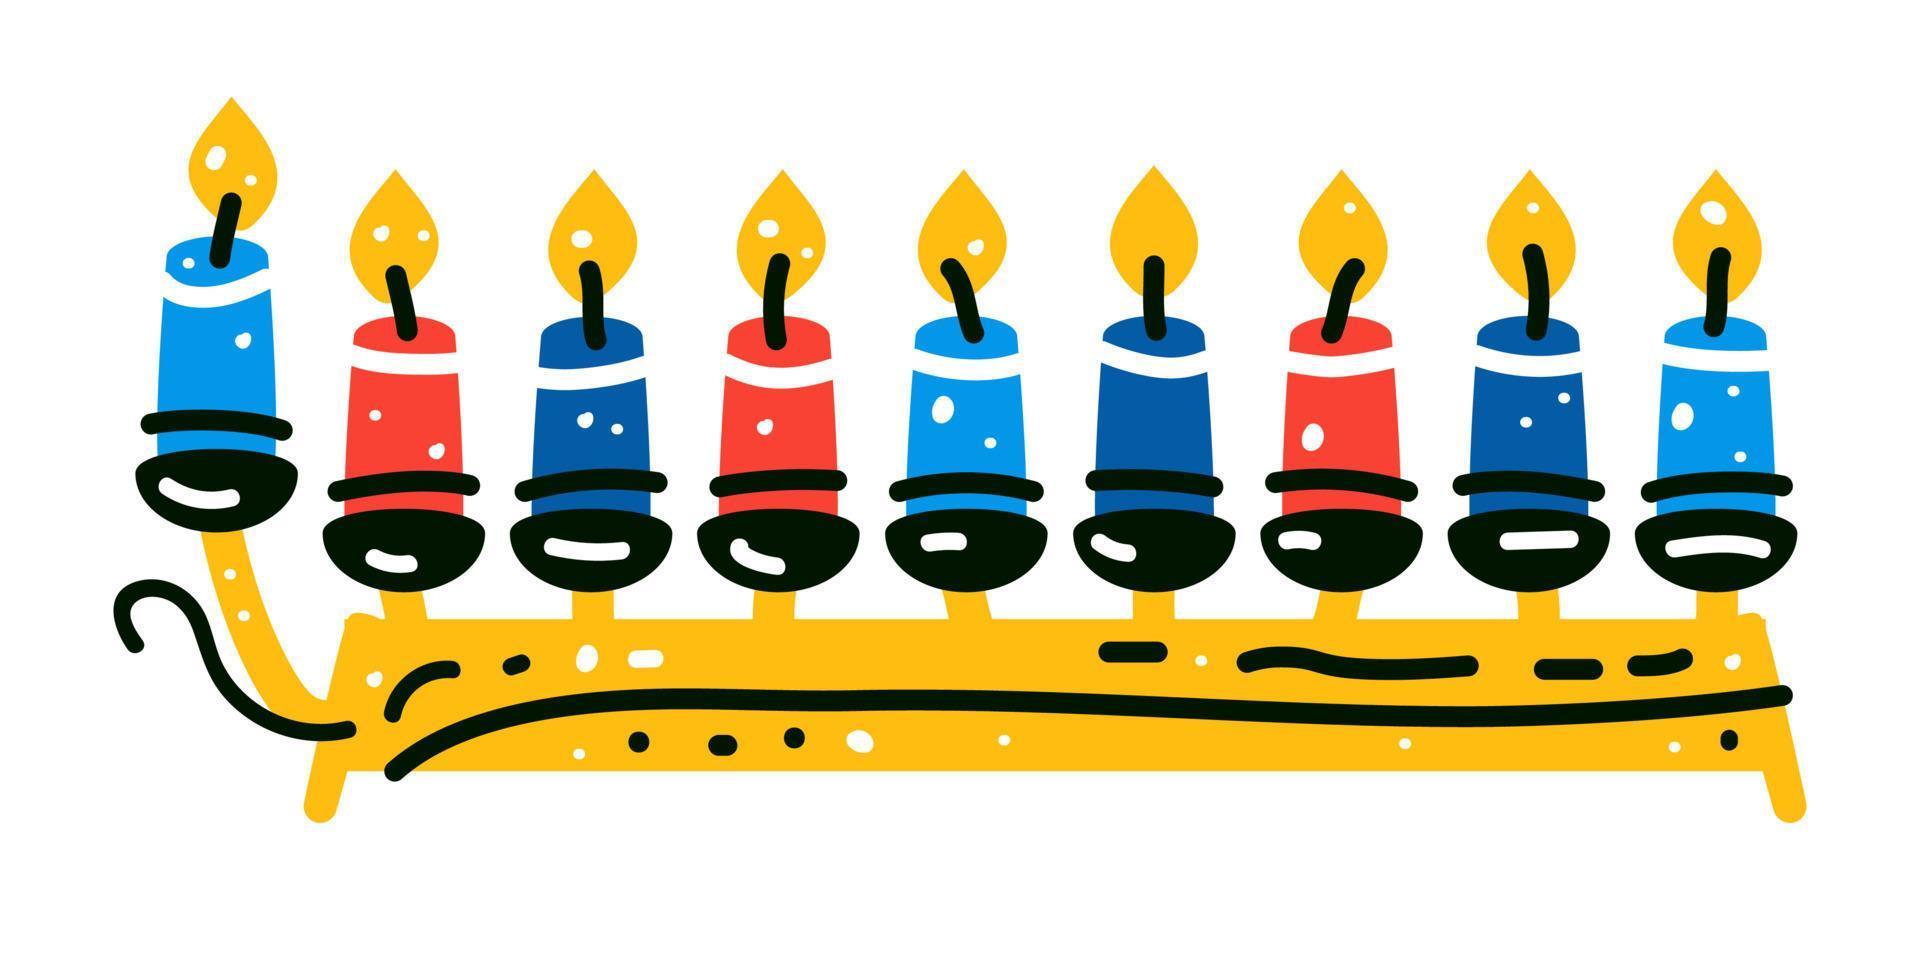 candelabro de hanukkah menorah con nueve velas encendidas vector plano.